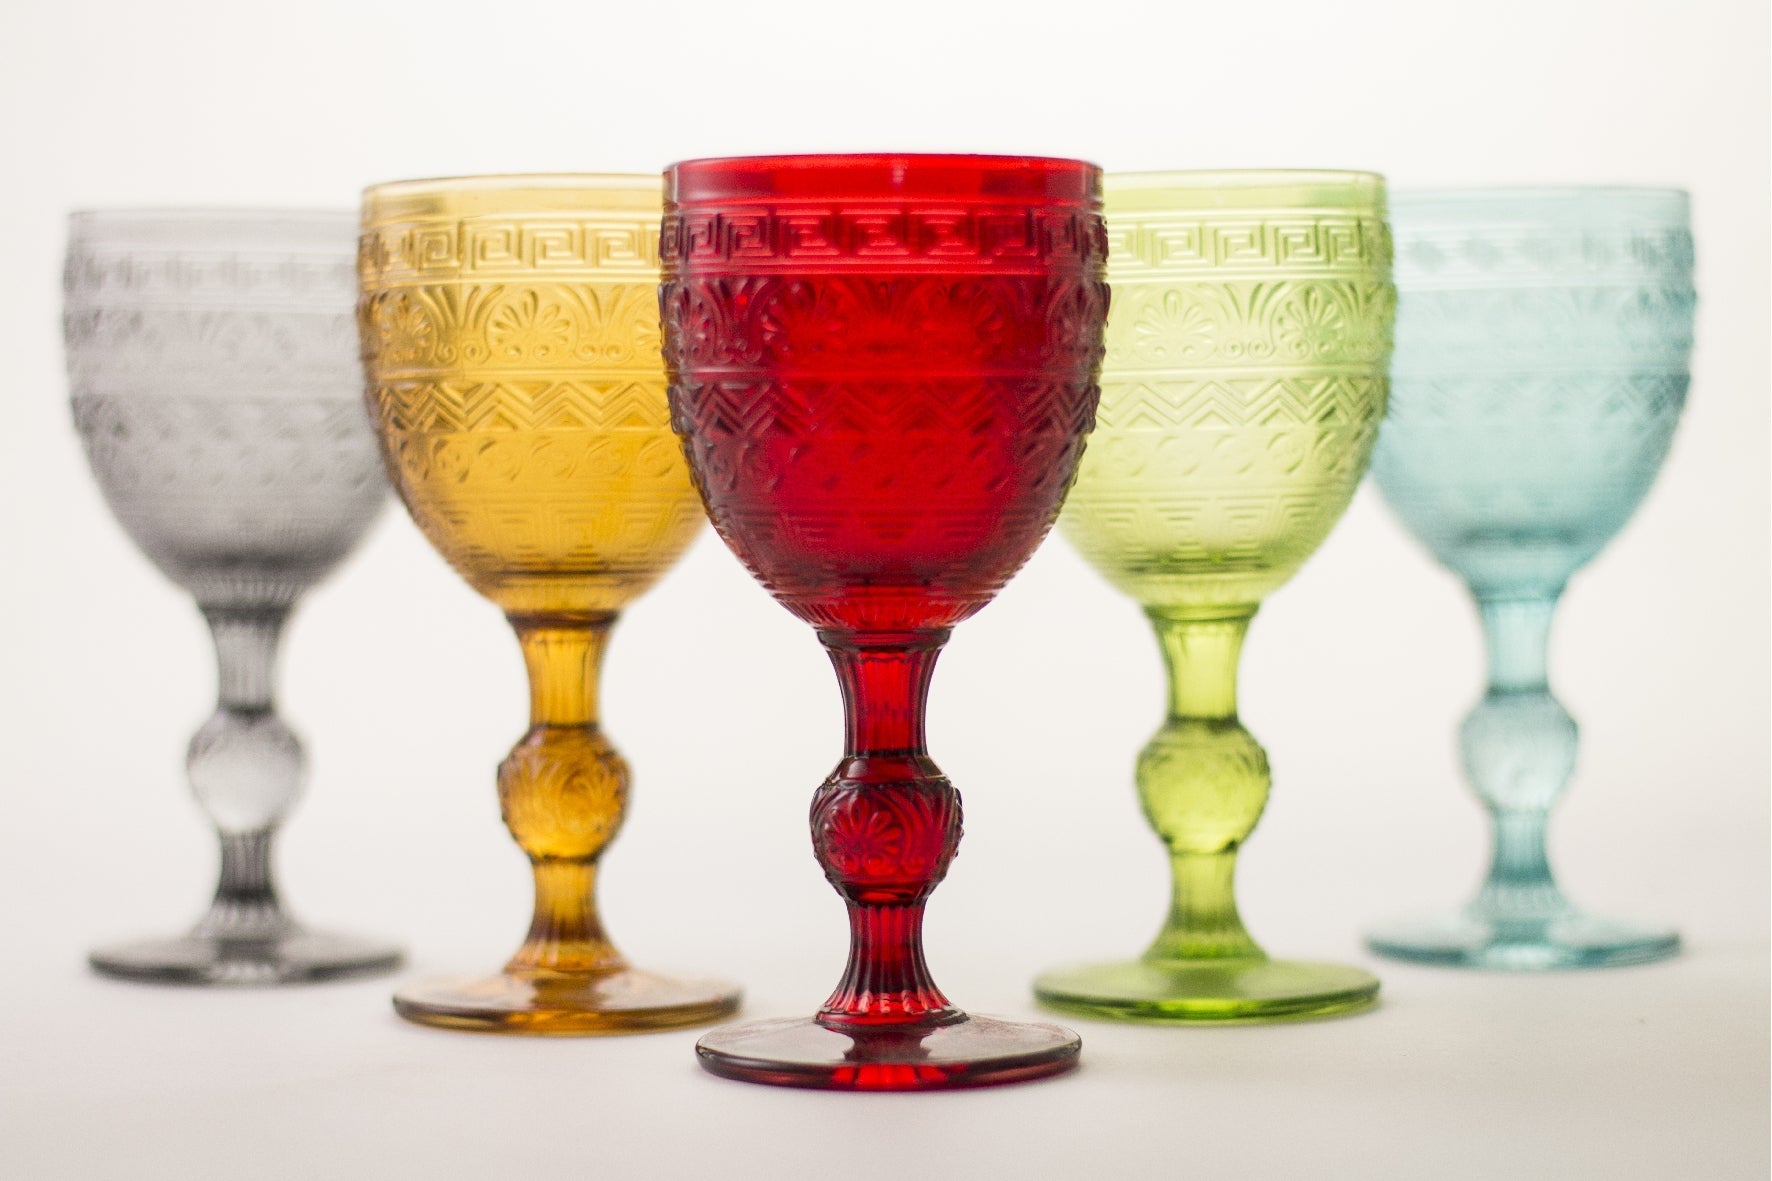 LAV - Set di 6 bicchieri in vetro in colori pastello, multicolore